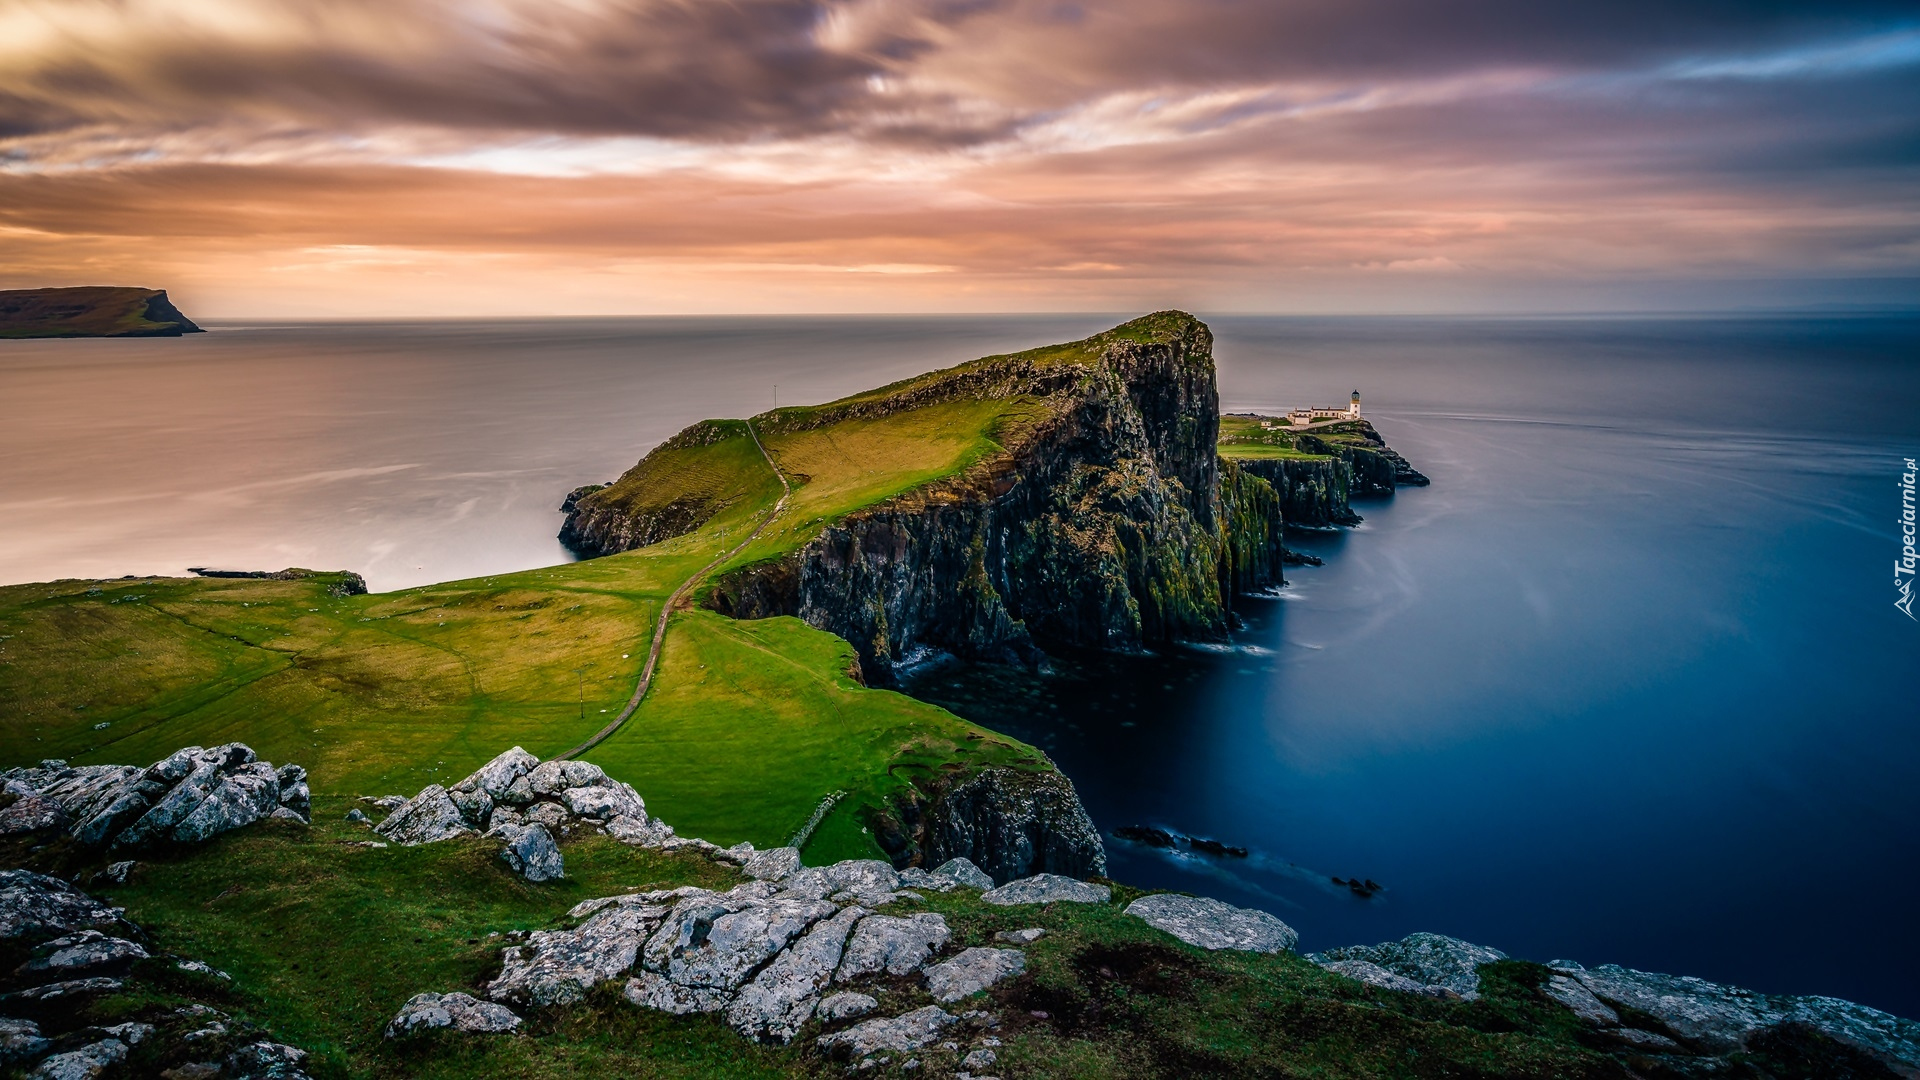 Morze Szkockie, Wybrzeże, Klif, Skały, Wyspa Skye, Półwysep Duirinish, Latarnia morska, Neist Point Lighthouse, Zachód słońca, Chmury, Szkocja